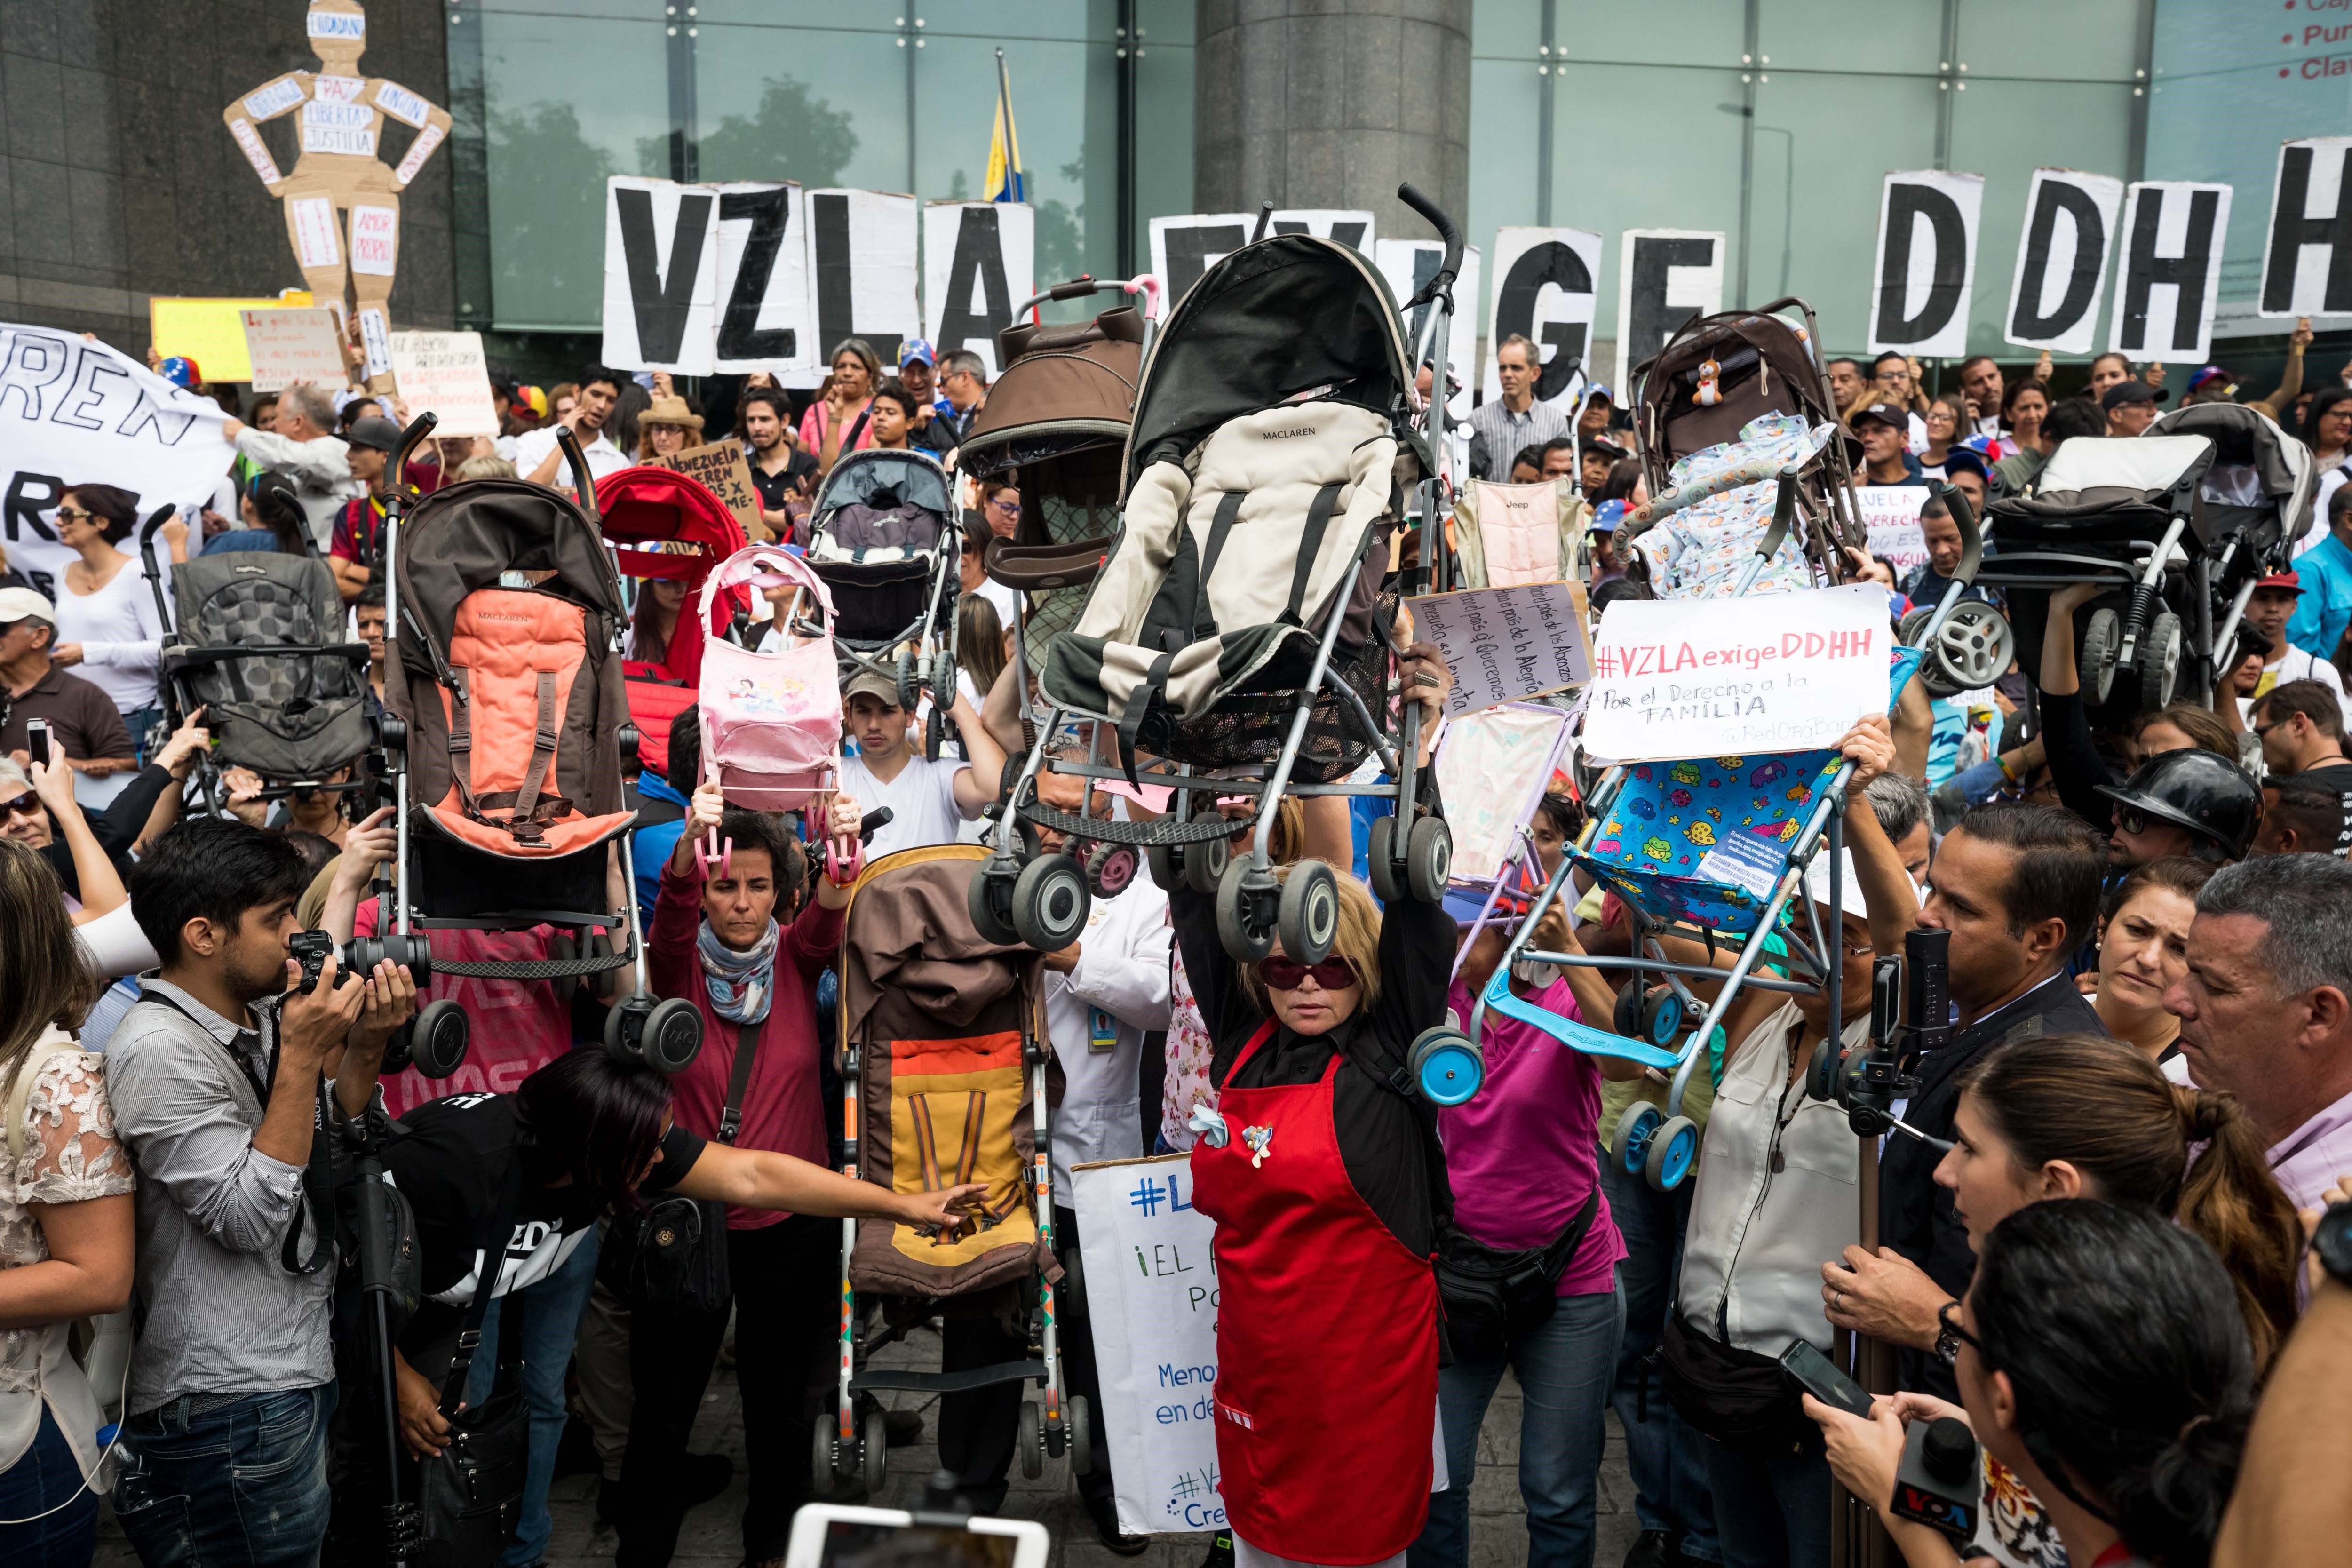 América Latina es la región más peligrosa para defender derechos en el mundo